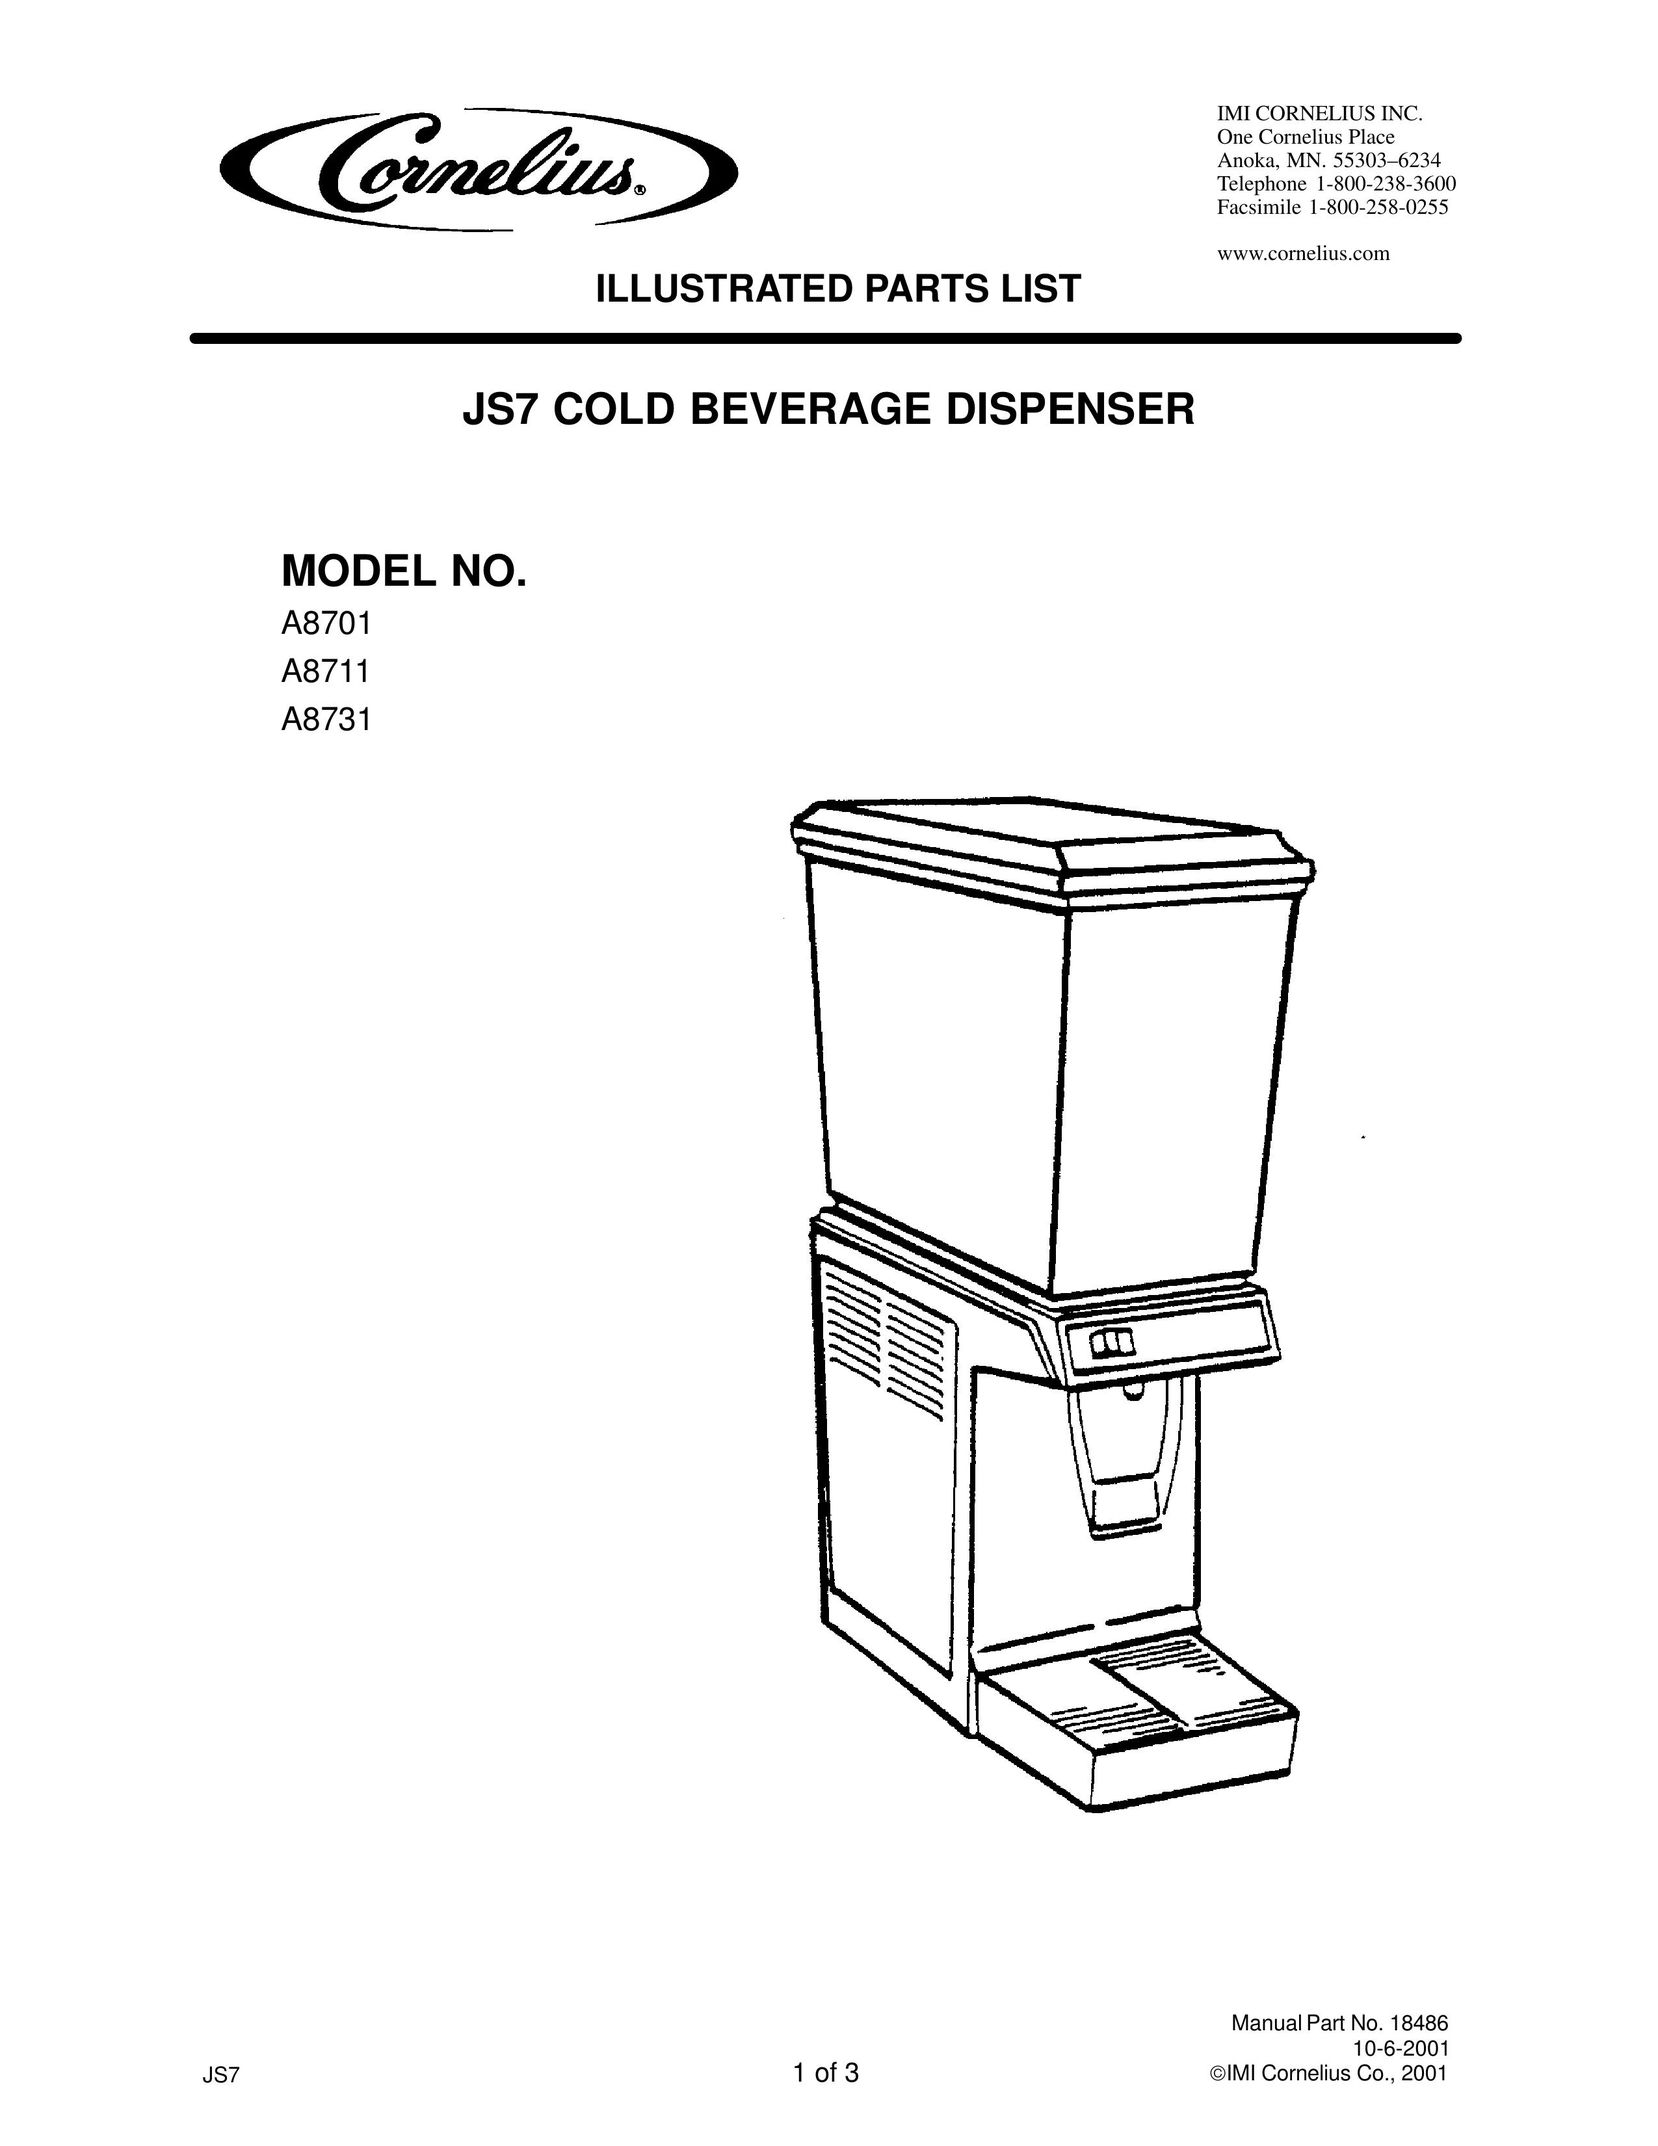 Panasonic JS7 Beverage Dispenser User Manual